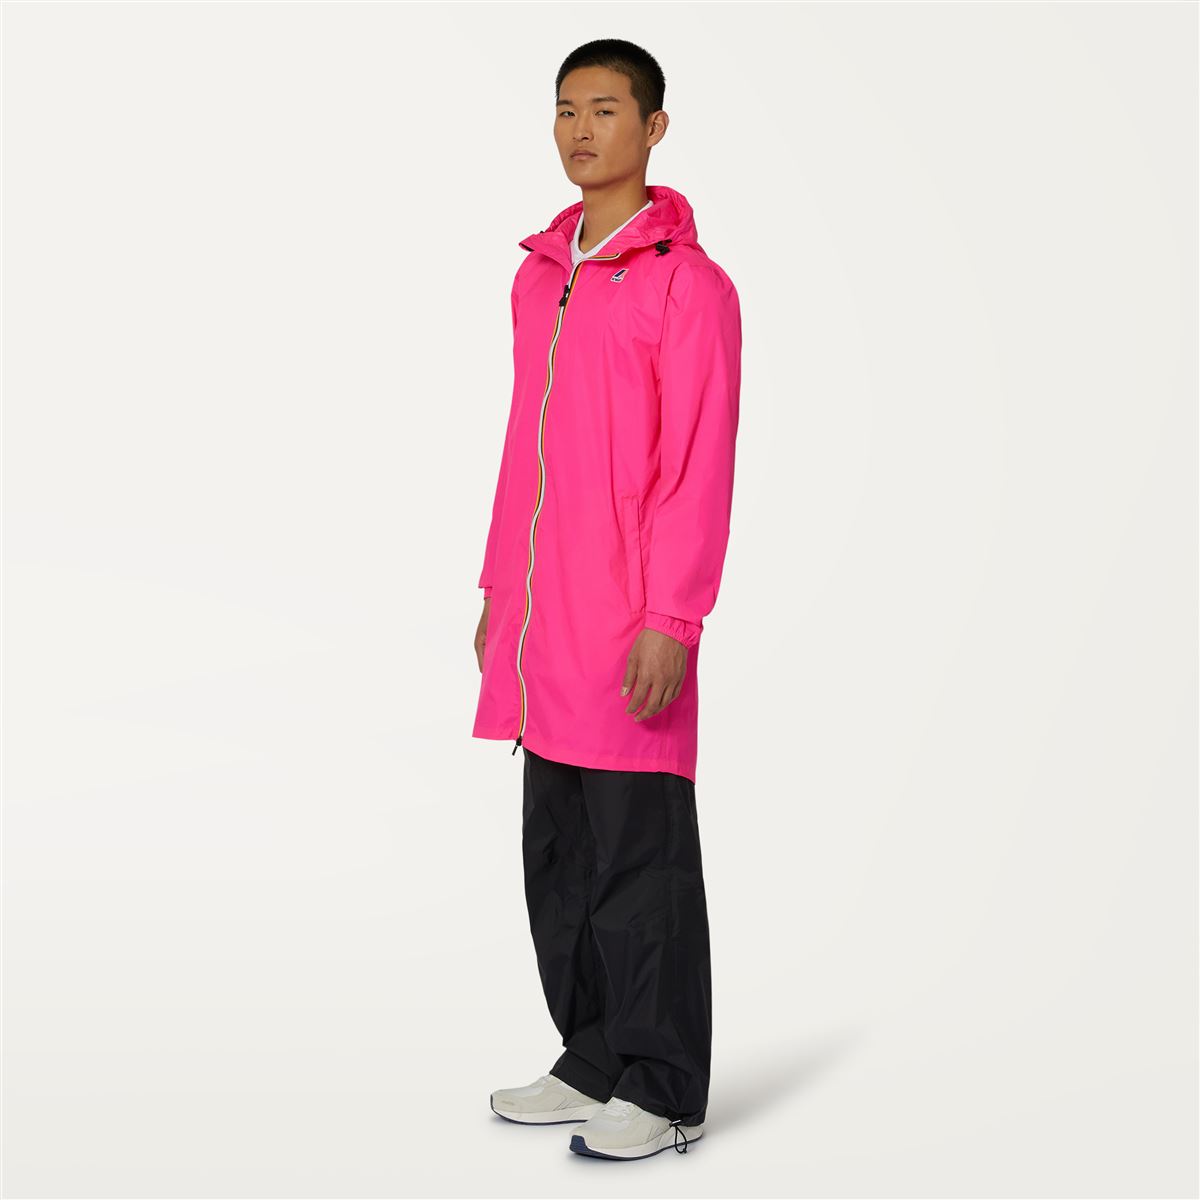 Eiffel - Unisex Waterproof Packable Long Rain Jacket in Pink Intense